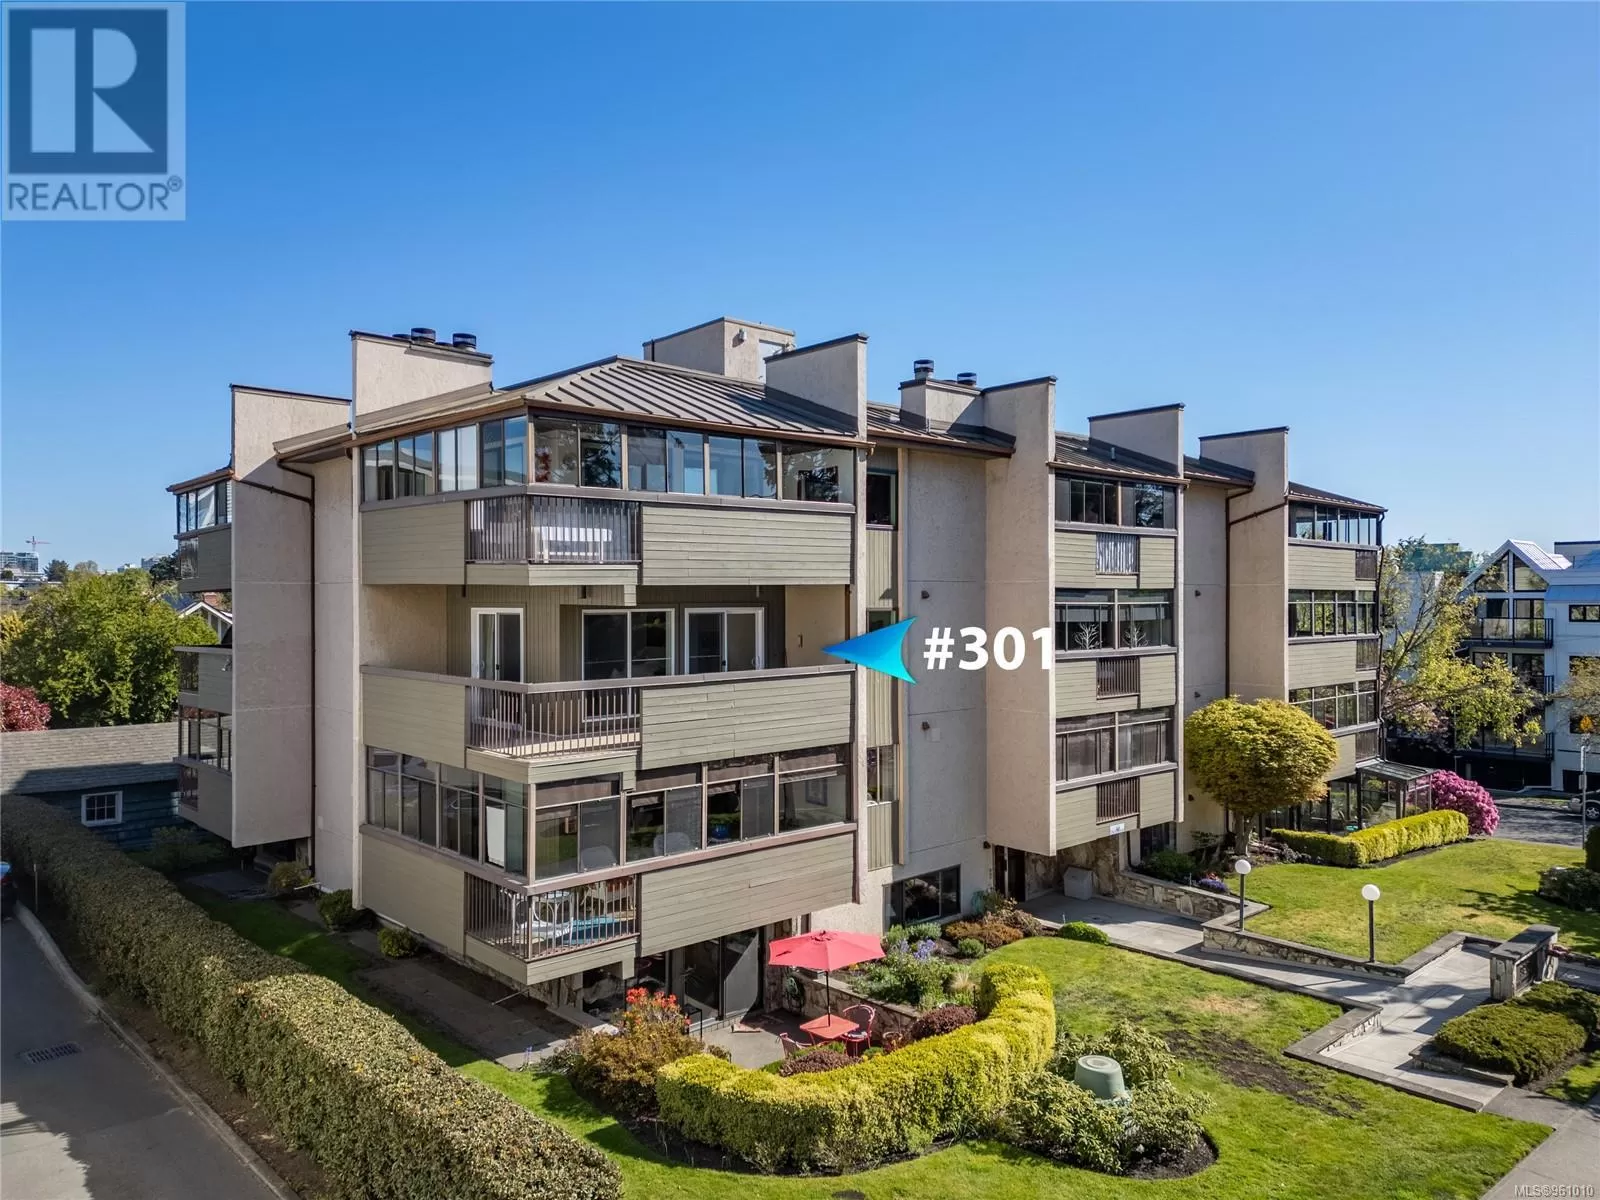 Apartment for rent: 301 920 Park Blvd, Victoria, British Columbia V8V 2T3